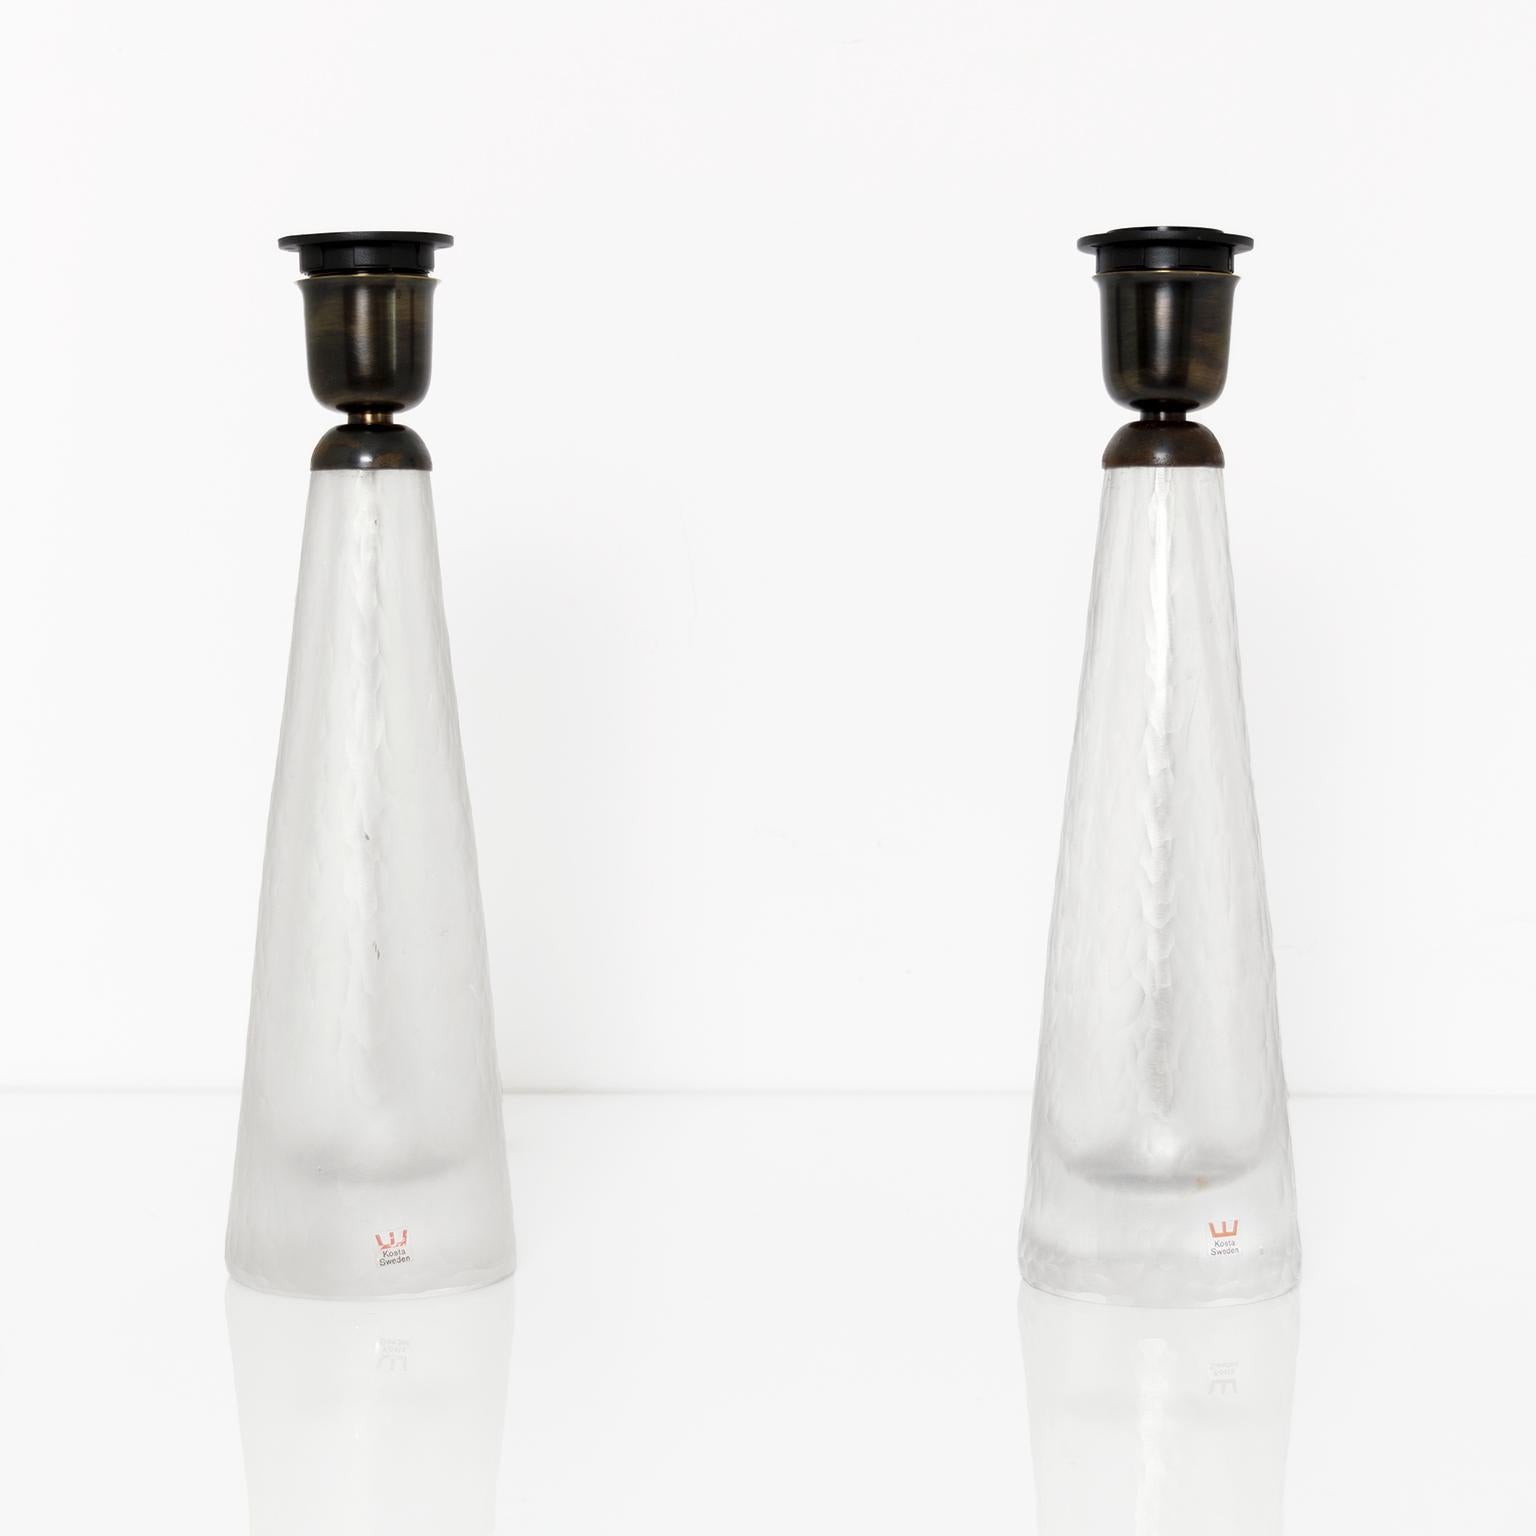 Paire de lampes en verre suédoises du milieu du siècle dernier, fabriquées par Kosta, années 1960. Les corps de lampe ont une surface ciselée et gravée à l'acide. La quincaillerie est en laiton patiné sur mesure et nouvellement câblée pour une